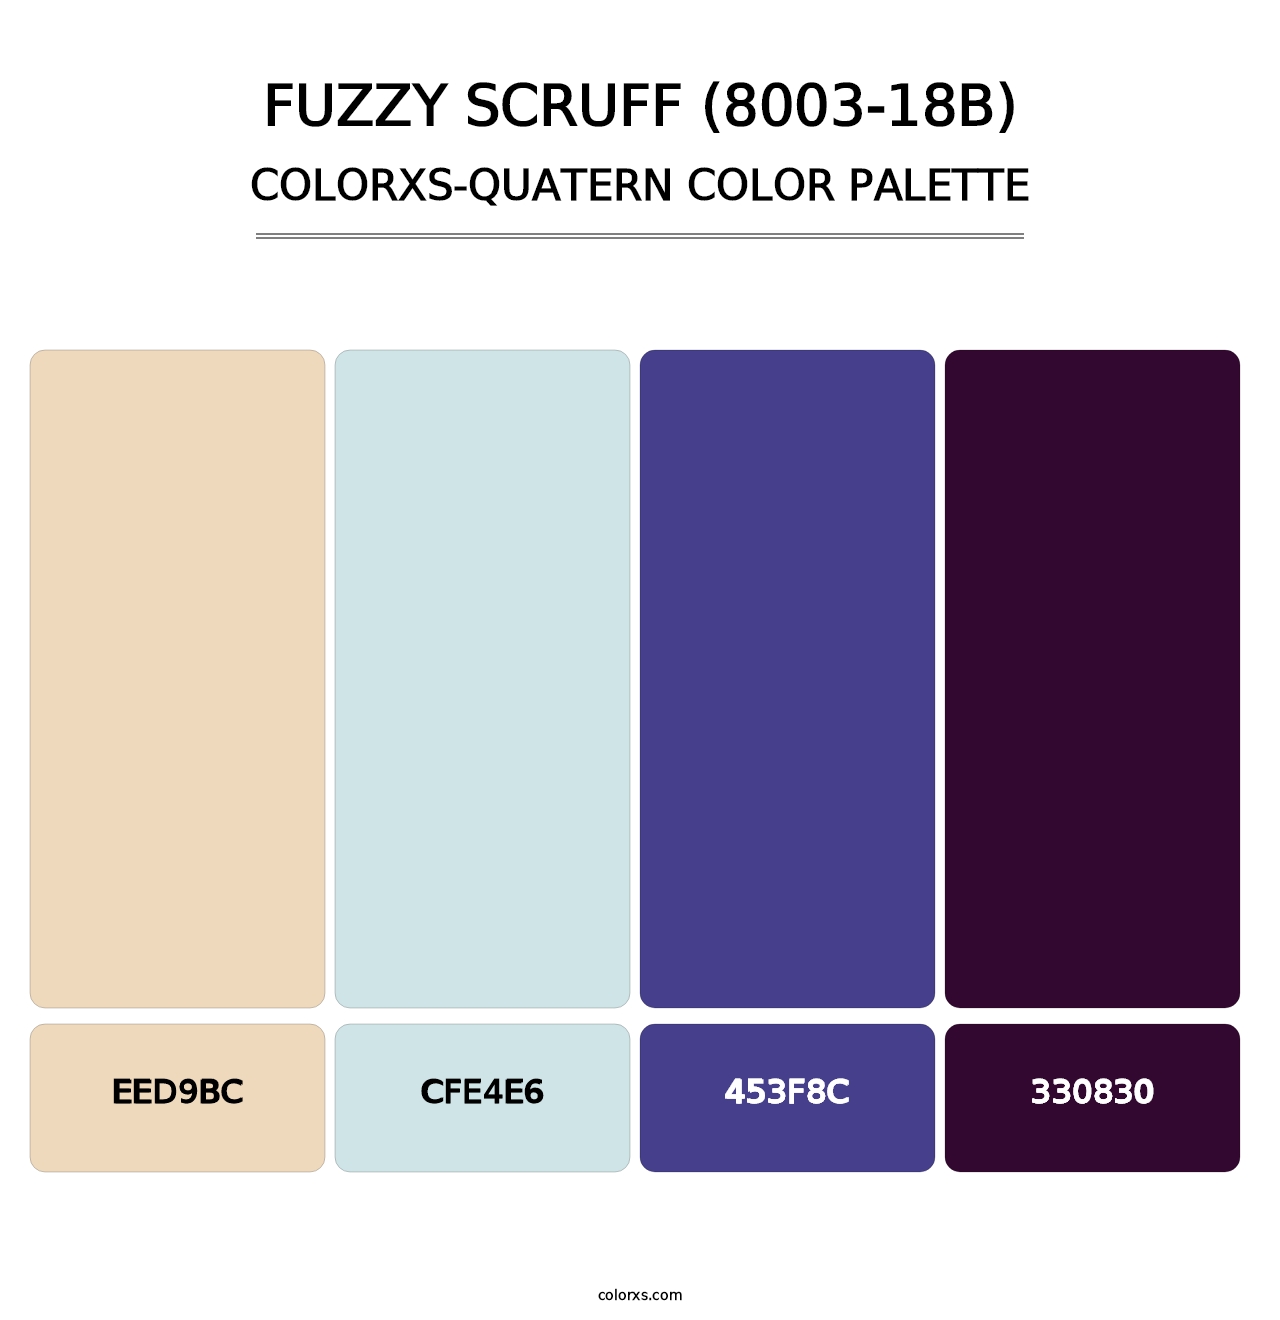 Fuzzy Scruff (8003-18B) - Colorxs Quatern Palette